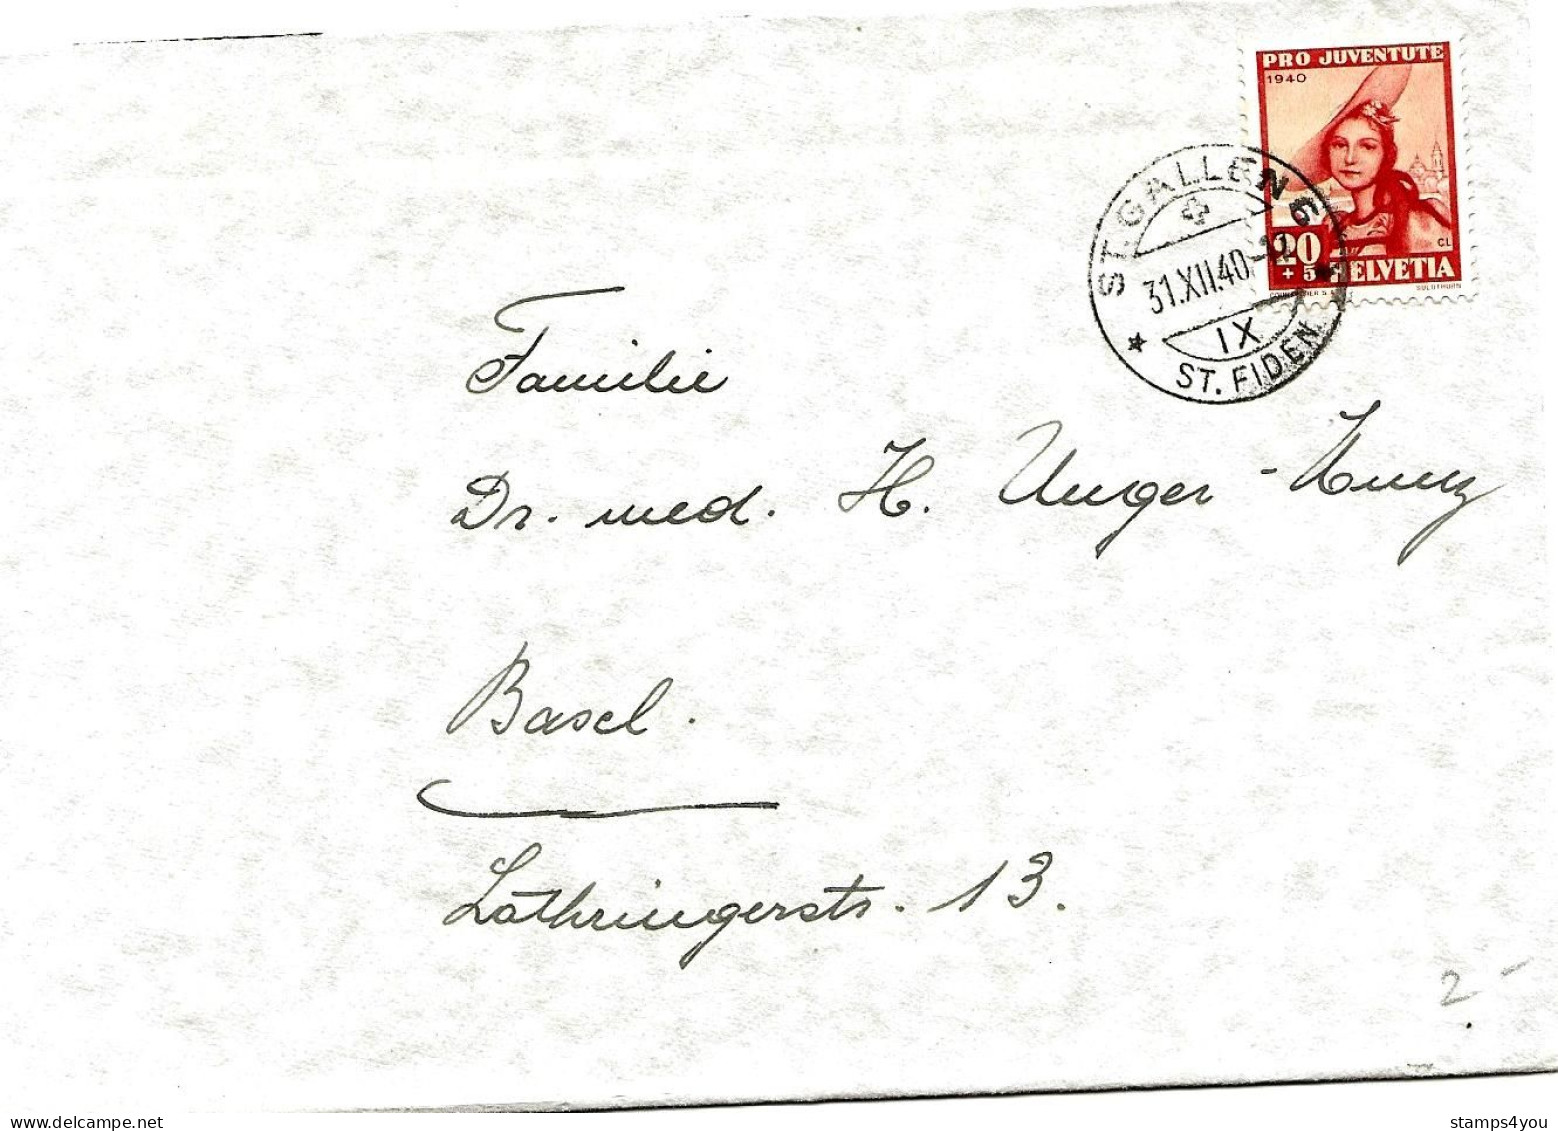 79 - 89 - Enveloppe Avec Timbre Pro Juventute 1940 - Cachet à Date St Gallen 31.12.40. - Covers & Documents